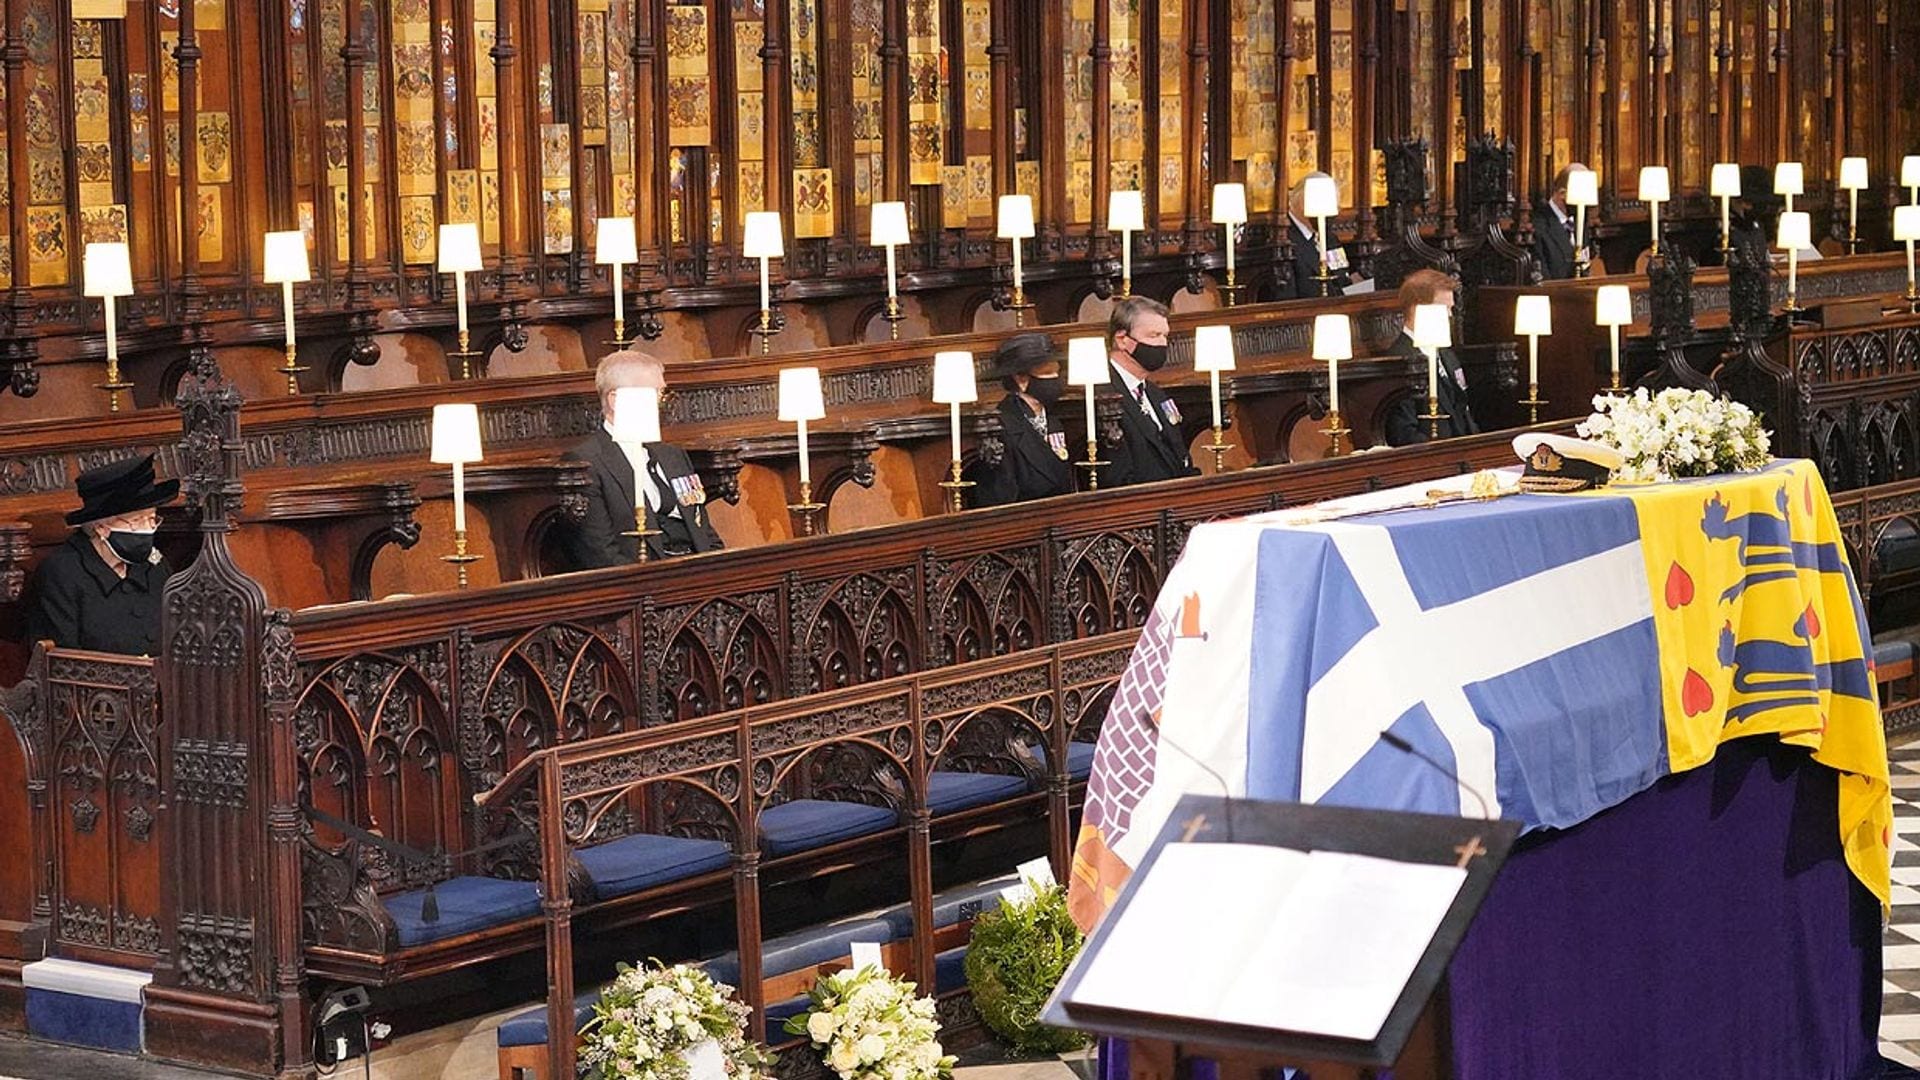 Solemne, emotiva y de acuerdo a sus deseos, así ha sido la ceremonia religiosa para despedir al duque de Edimburgo